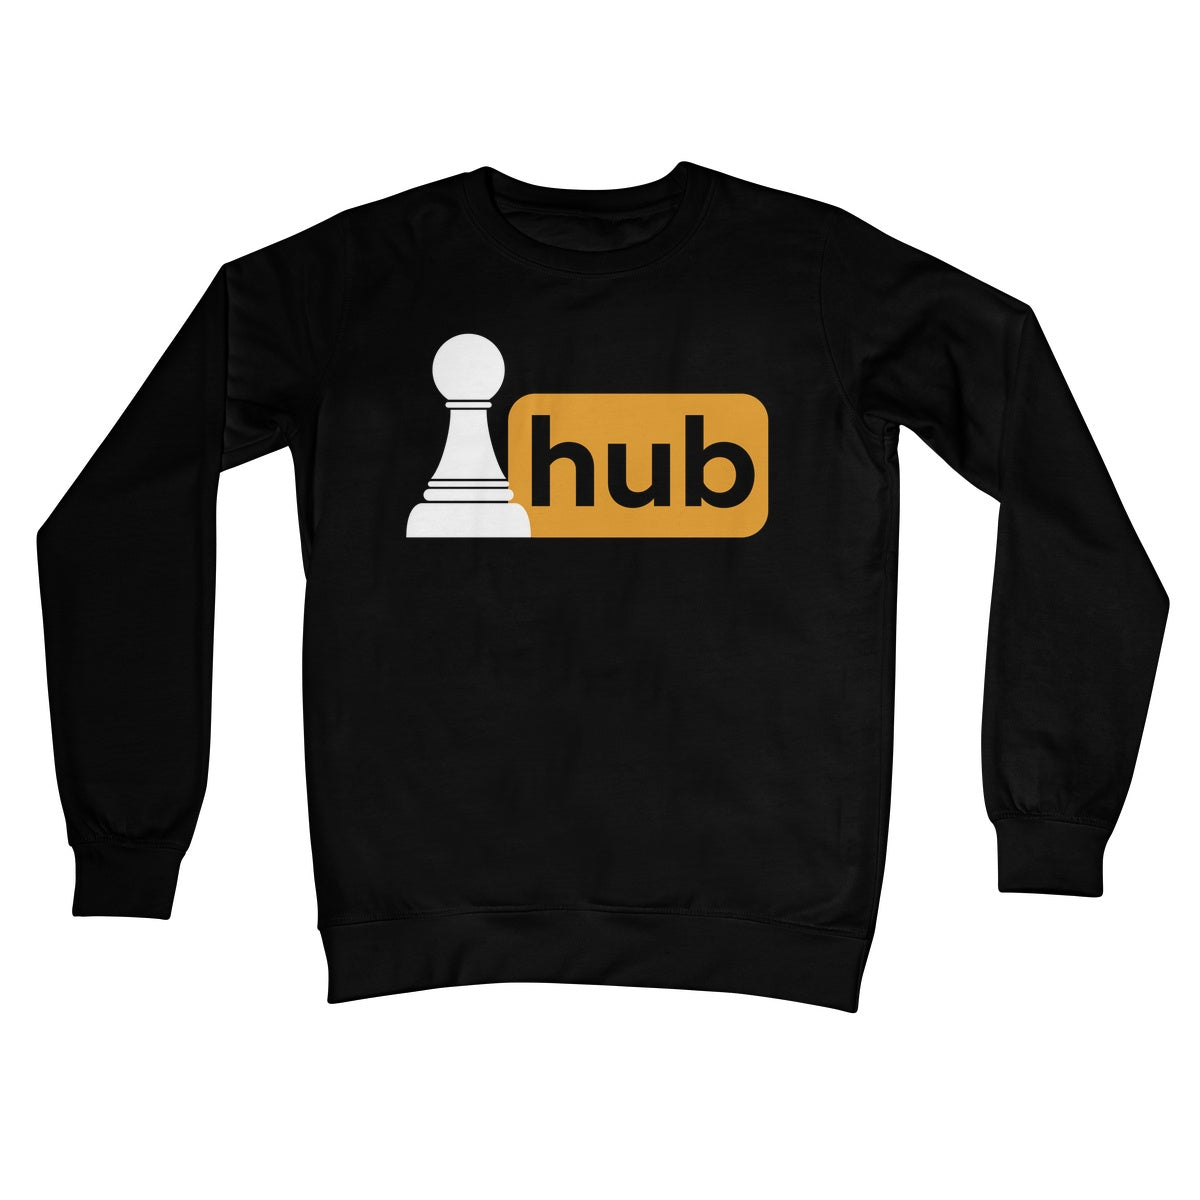 pawn hub jumper black